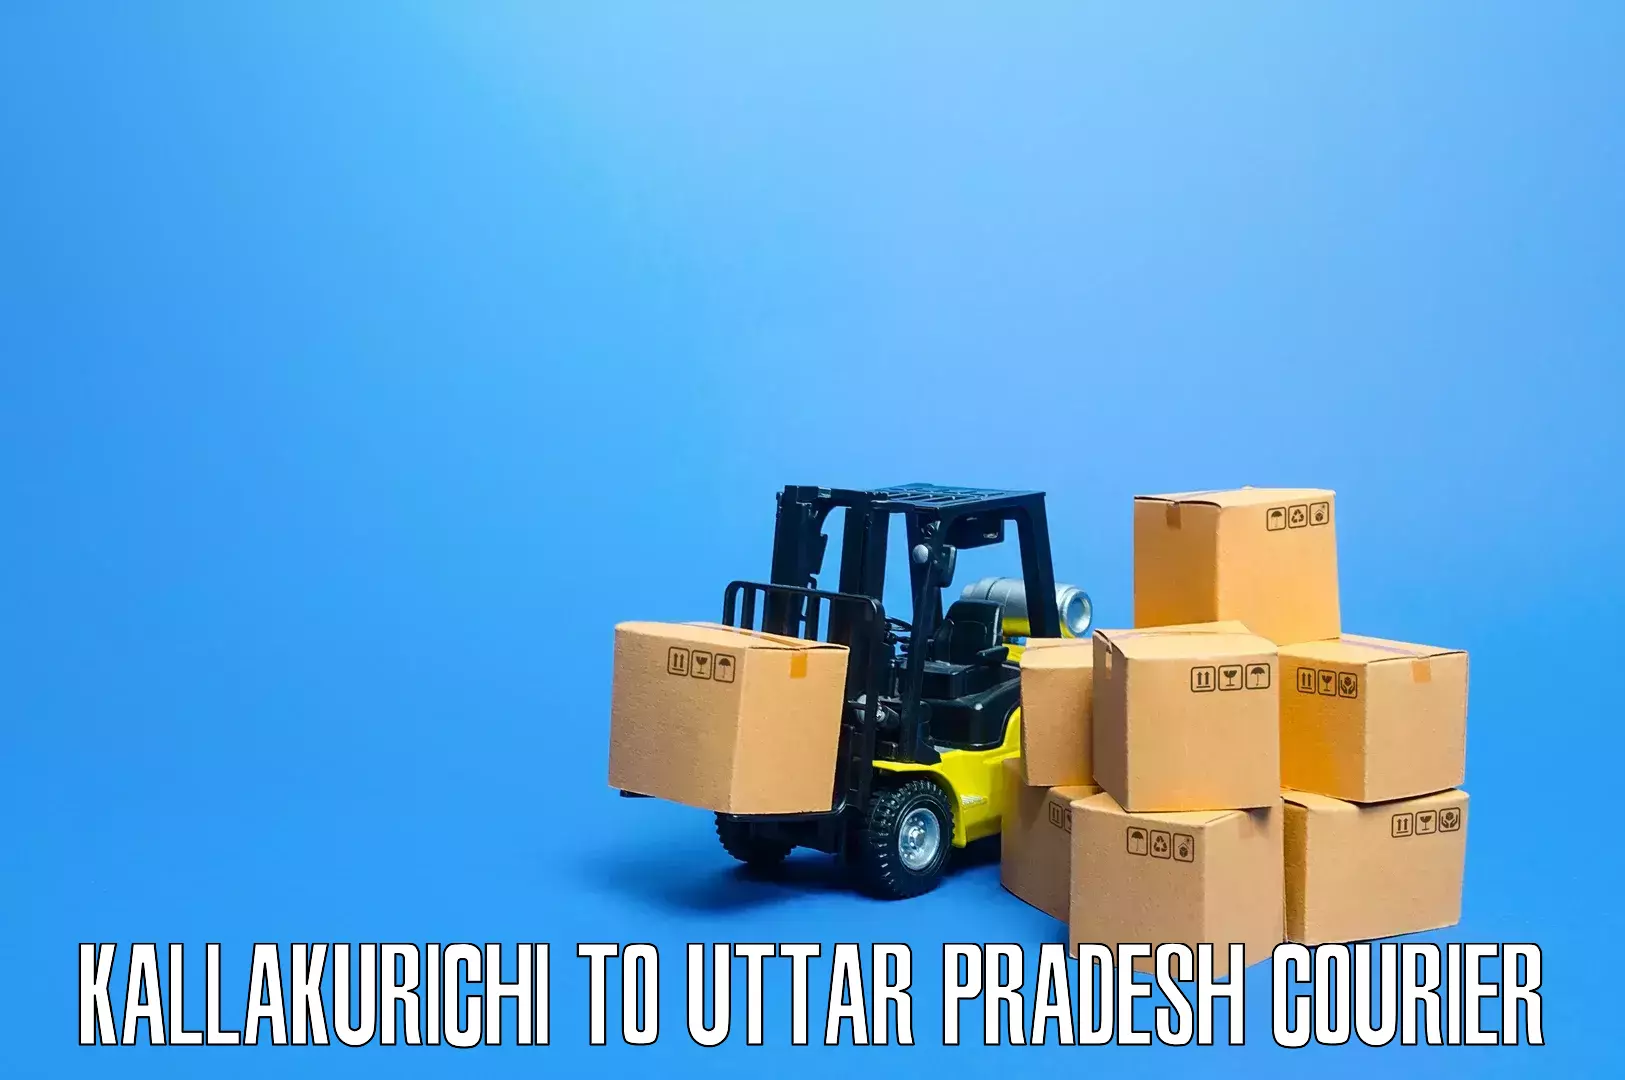 Furniture moving experts in Kallakurichi to Anupshahar